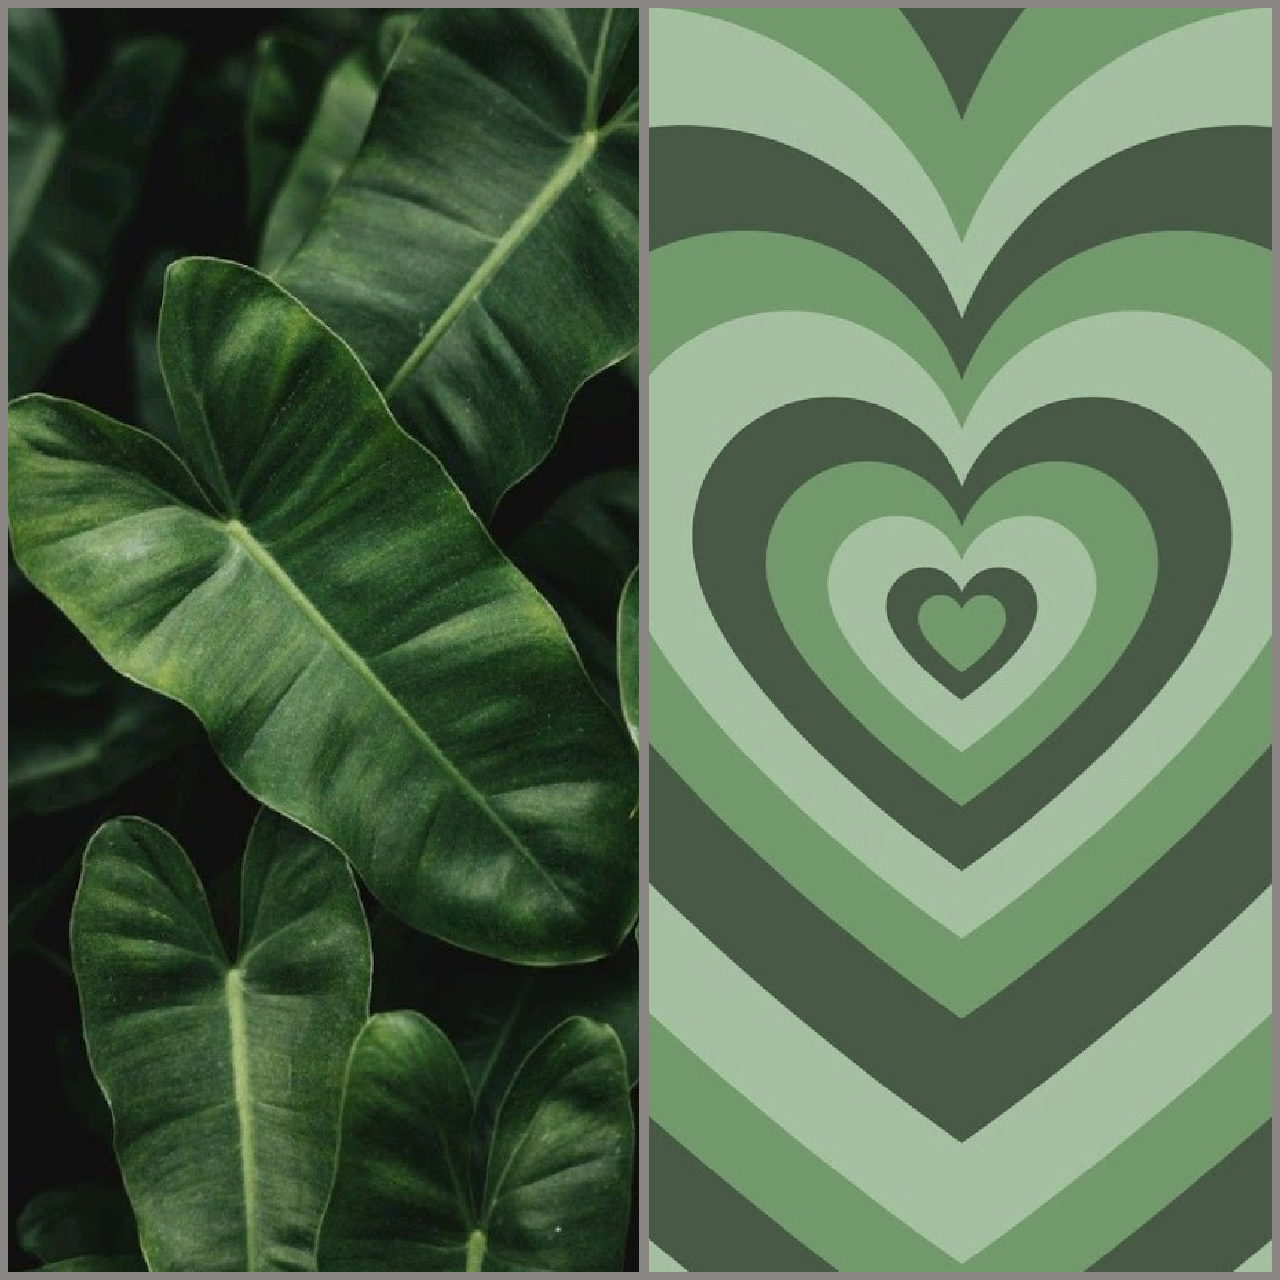 Hình nền xanh lá cây cho iPhone cute và đẹp mắt, tải ngay bạn nhé!